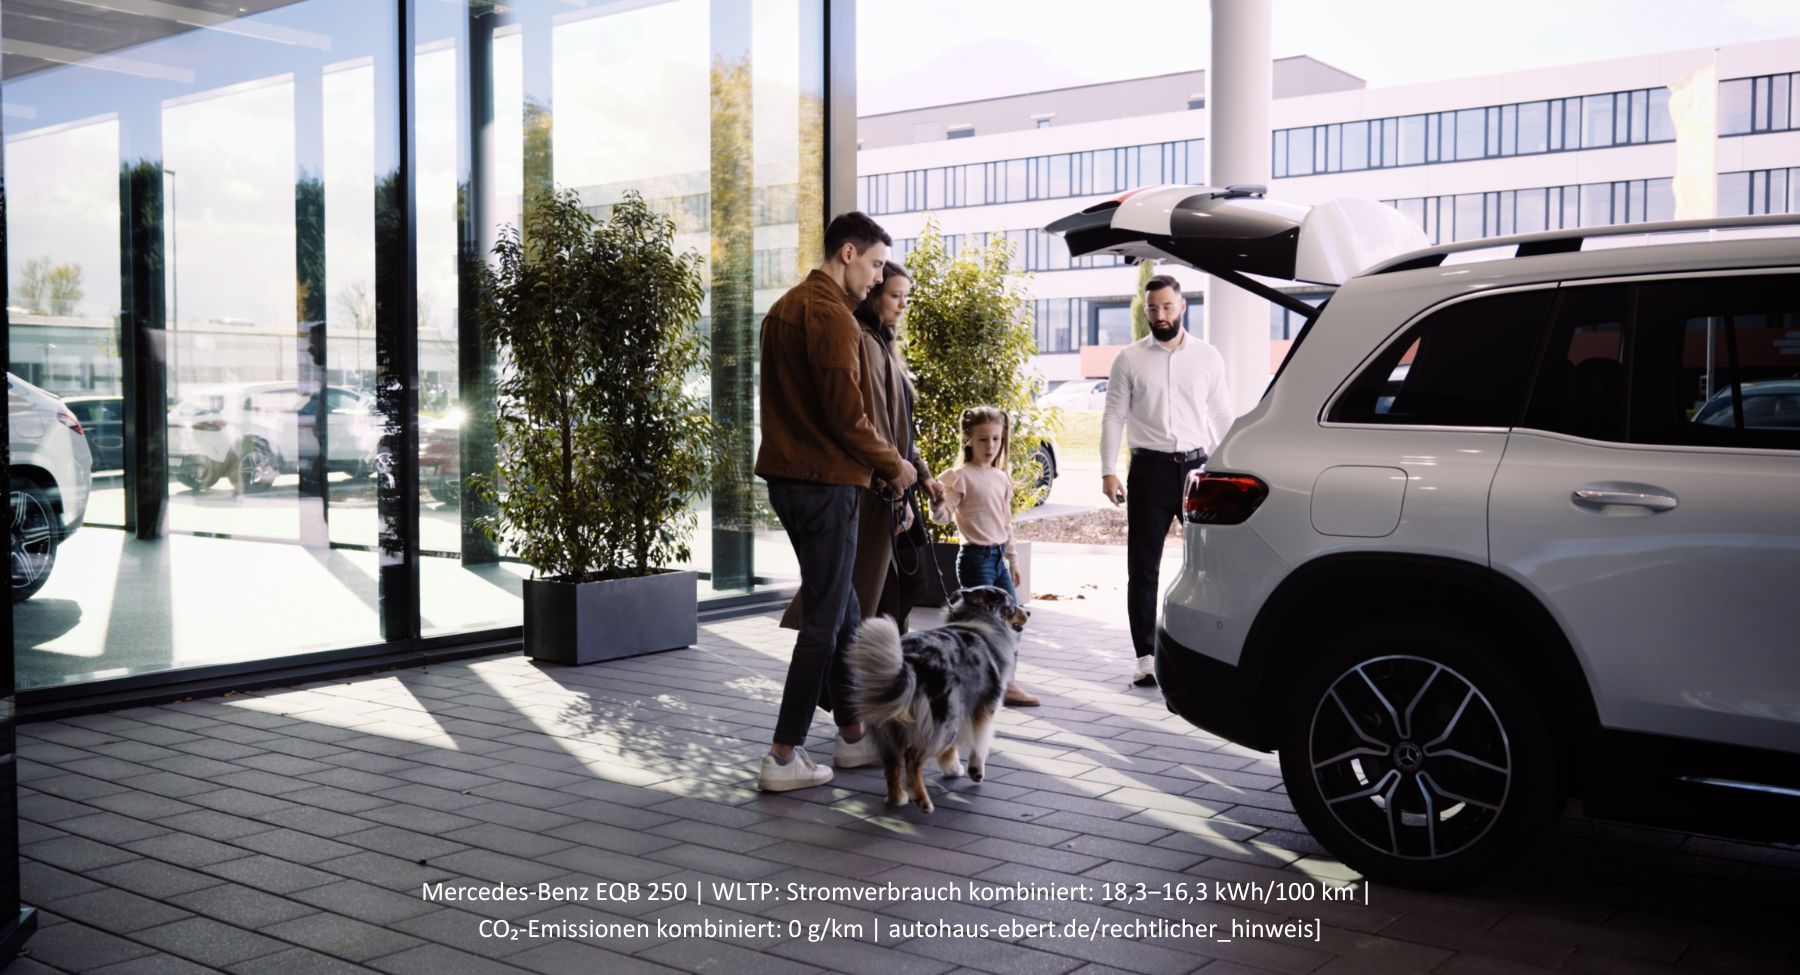 S&G - smart #1 - Ihr Autohaus für Mercedes-Benz und smart.